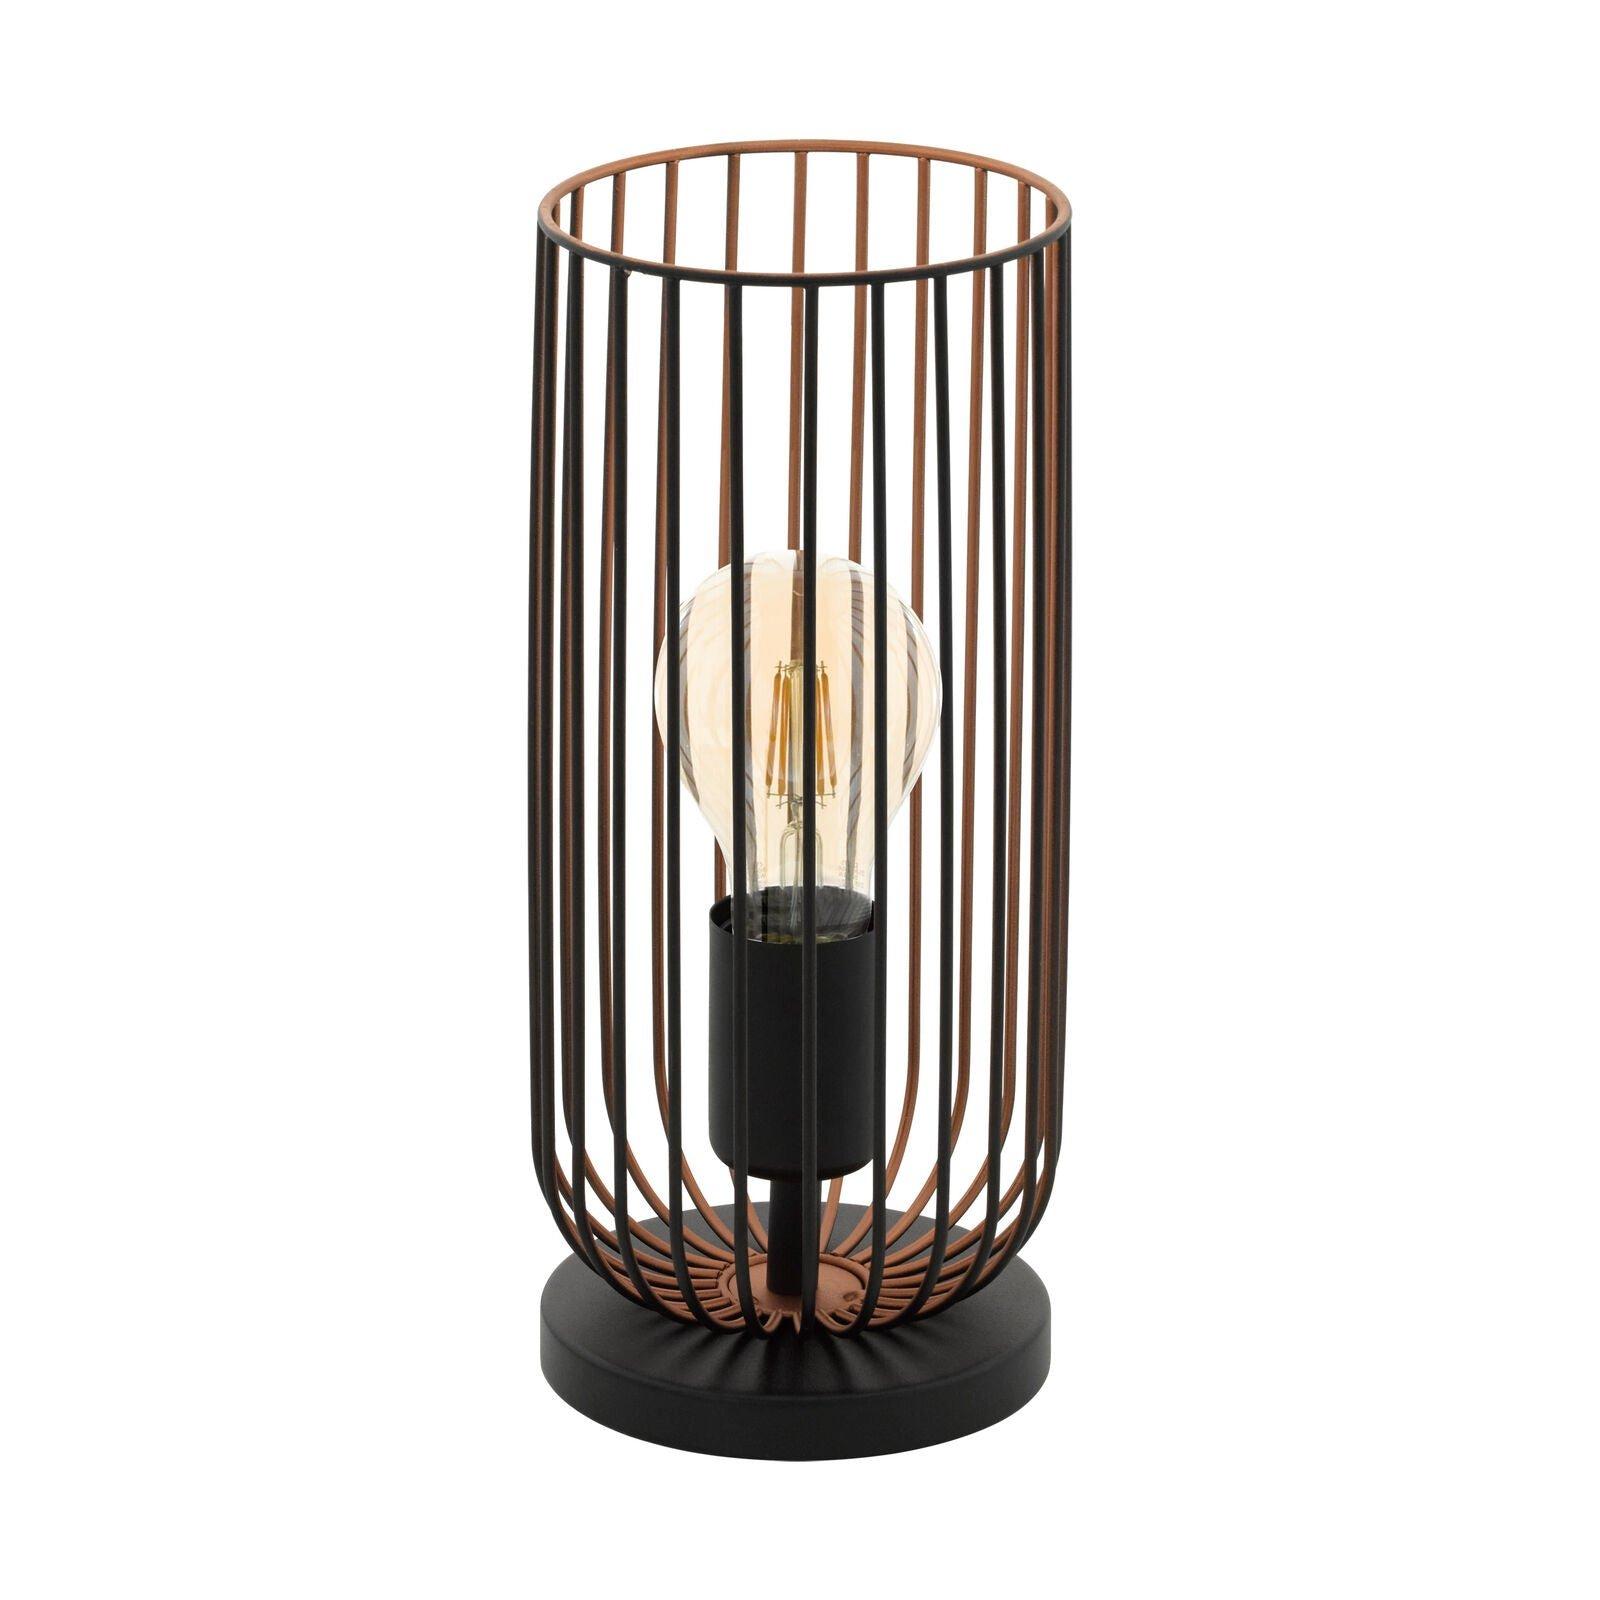 Small Table Lamp Desk Light Black & Copper Cage Shade 1 x 60W E27 Bulb